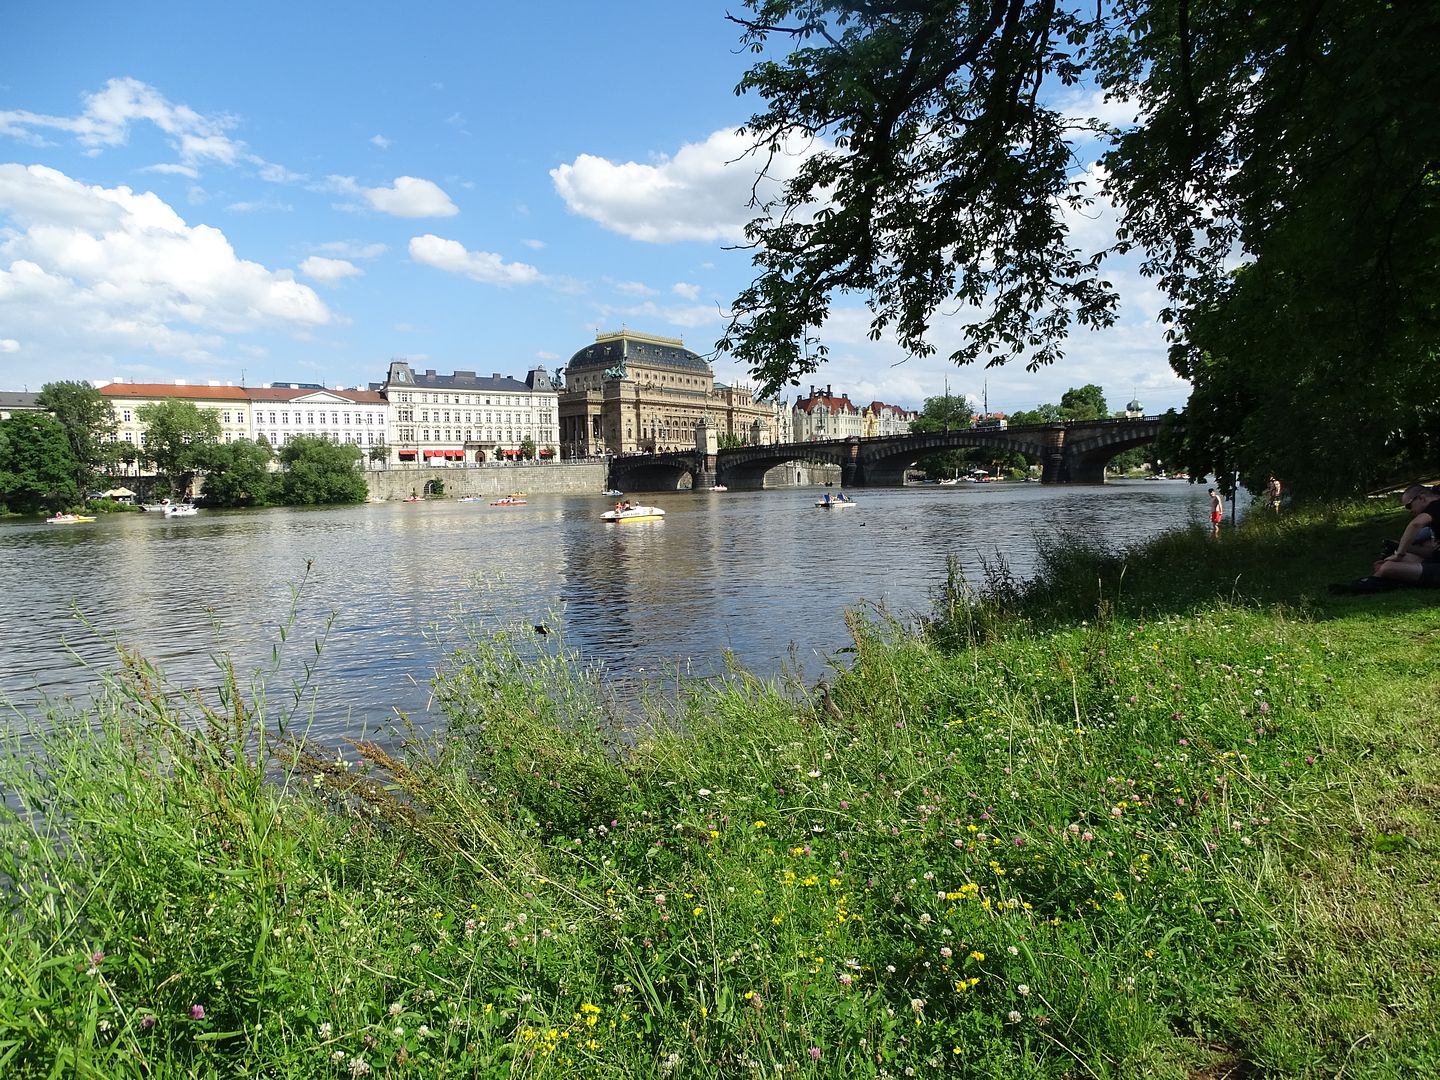 7 días en Praga con escursiones a Dresde (Alemania),Karlovy Vary y Terezin (E.C) - Blogs of Czech Republic - Día 3: Viernes 1 de Julio de 2016 (39)